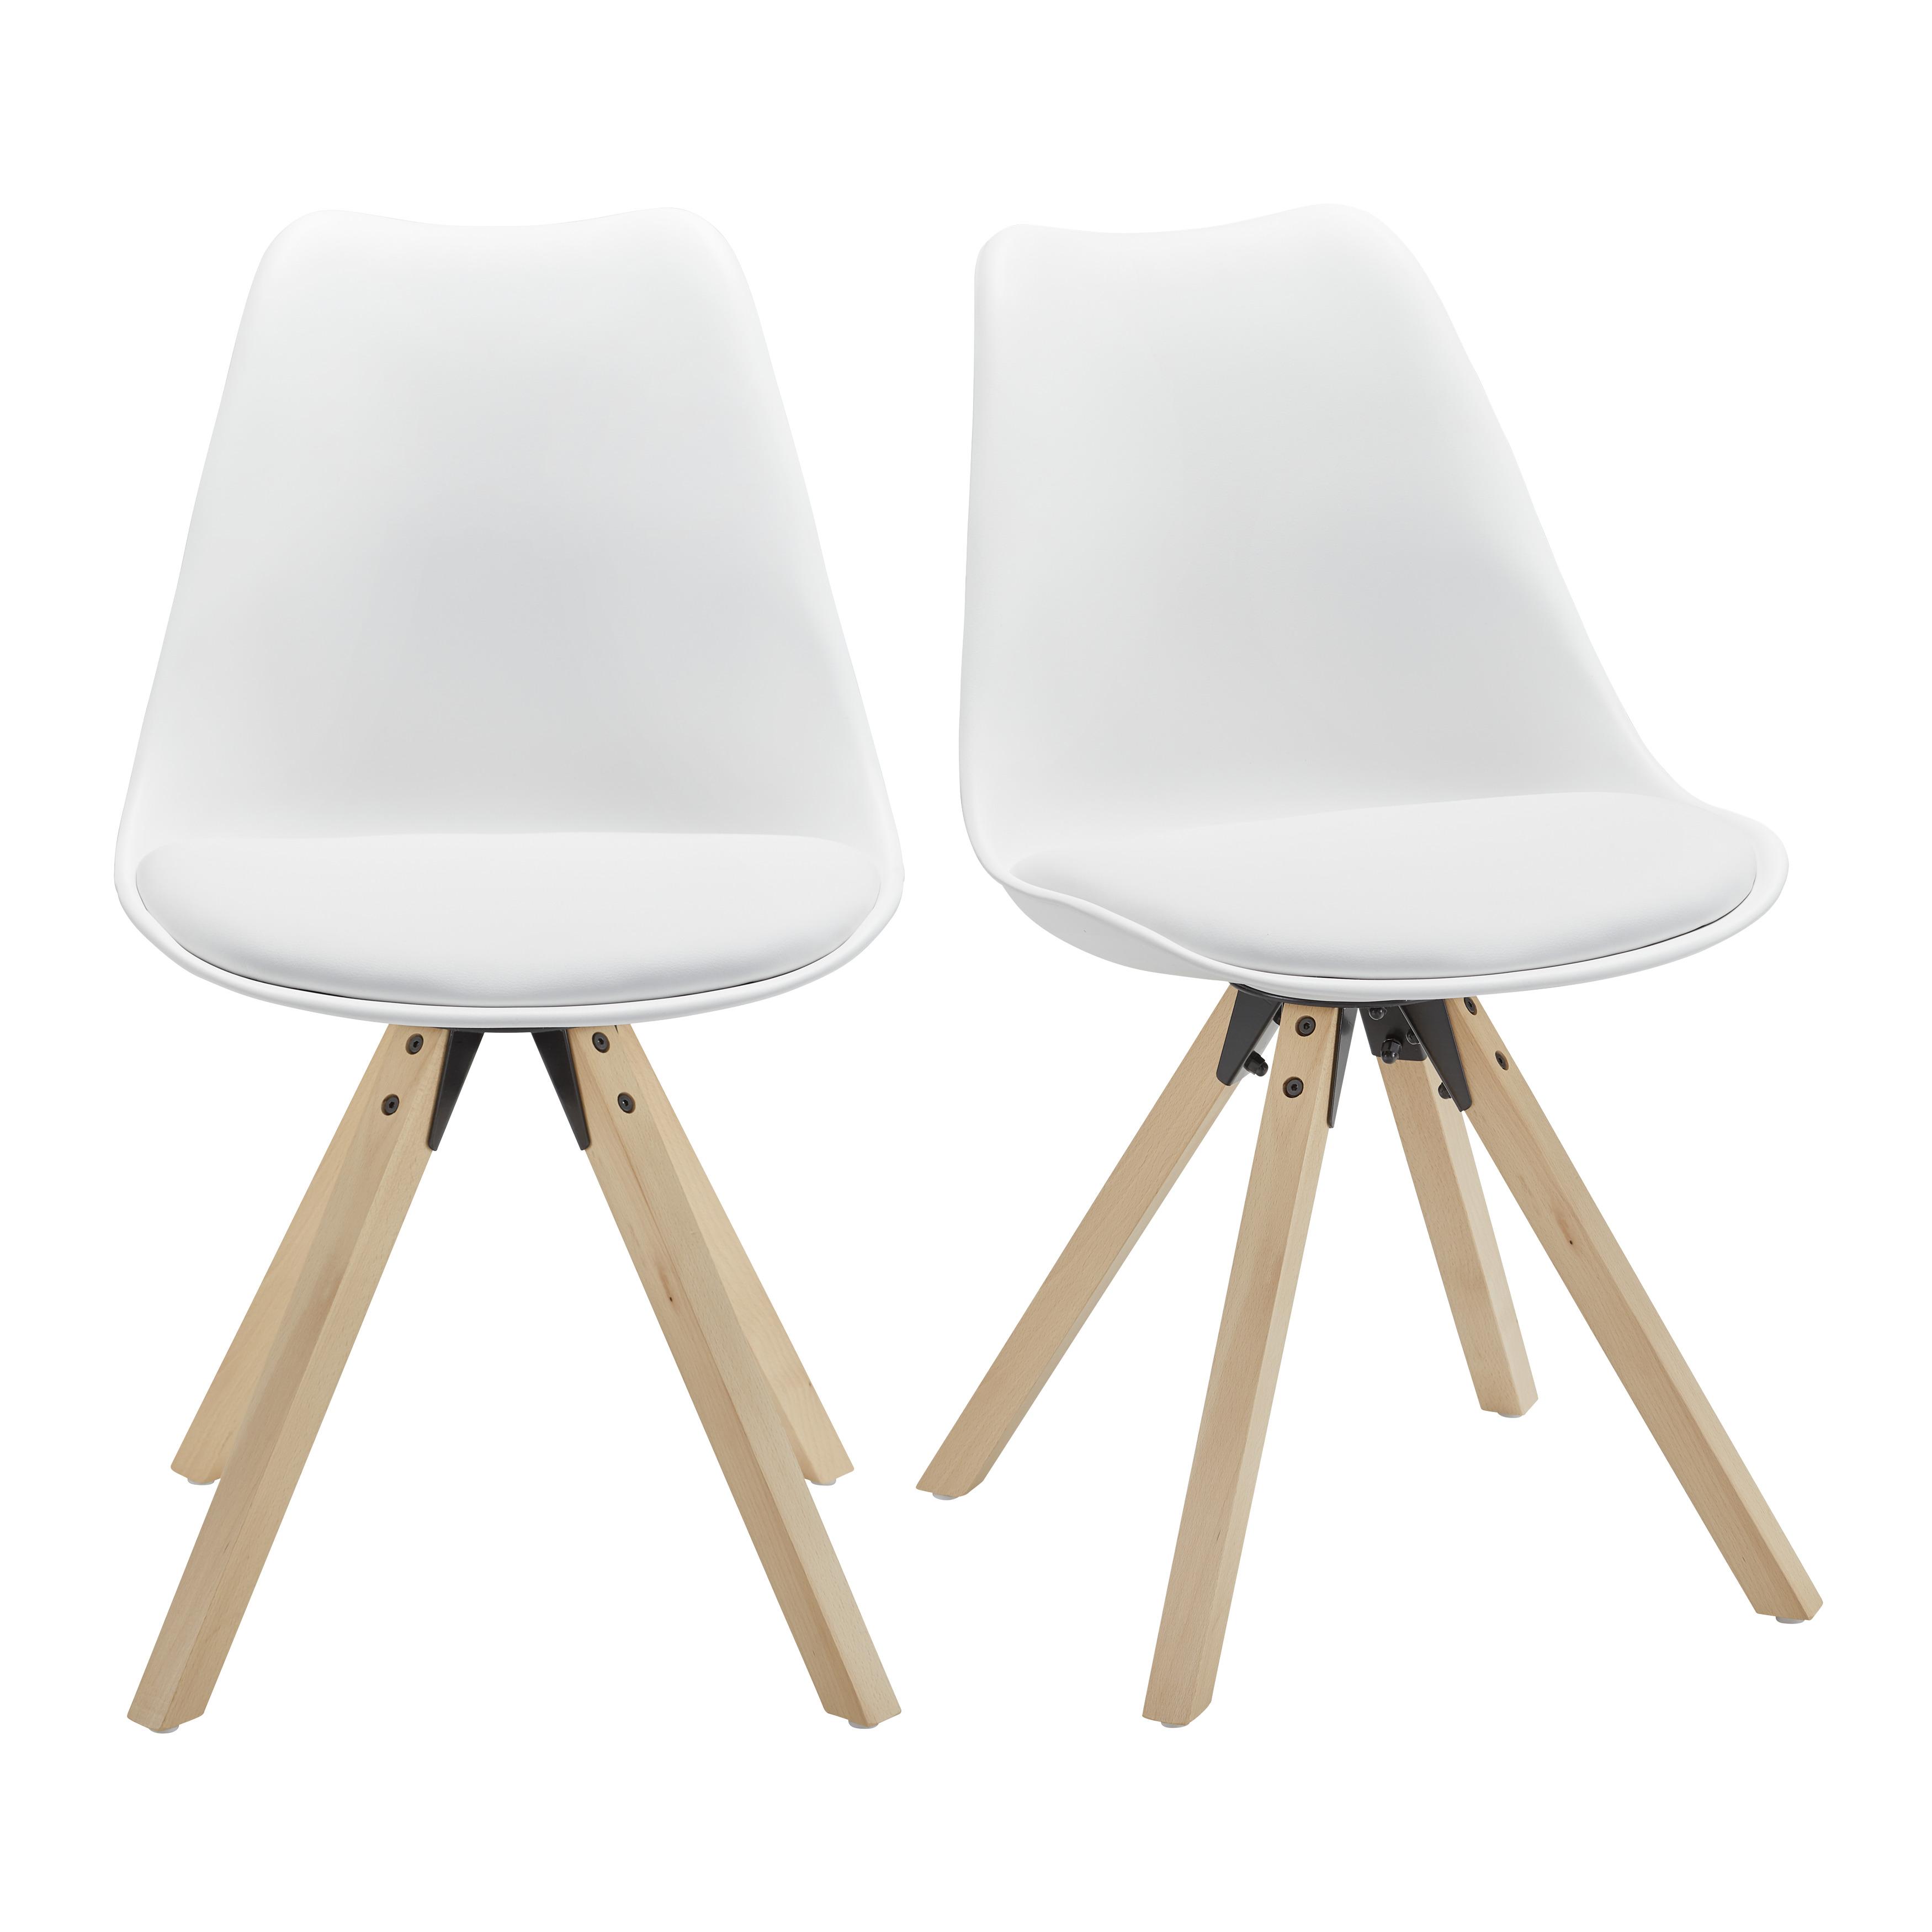 Stuhl "Ricky", weiß, Echtholz Beine - Buchefarben/Weiß, MODERN, Holz/Kunststoff (48/85/57,4cm) - Bessagi Home